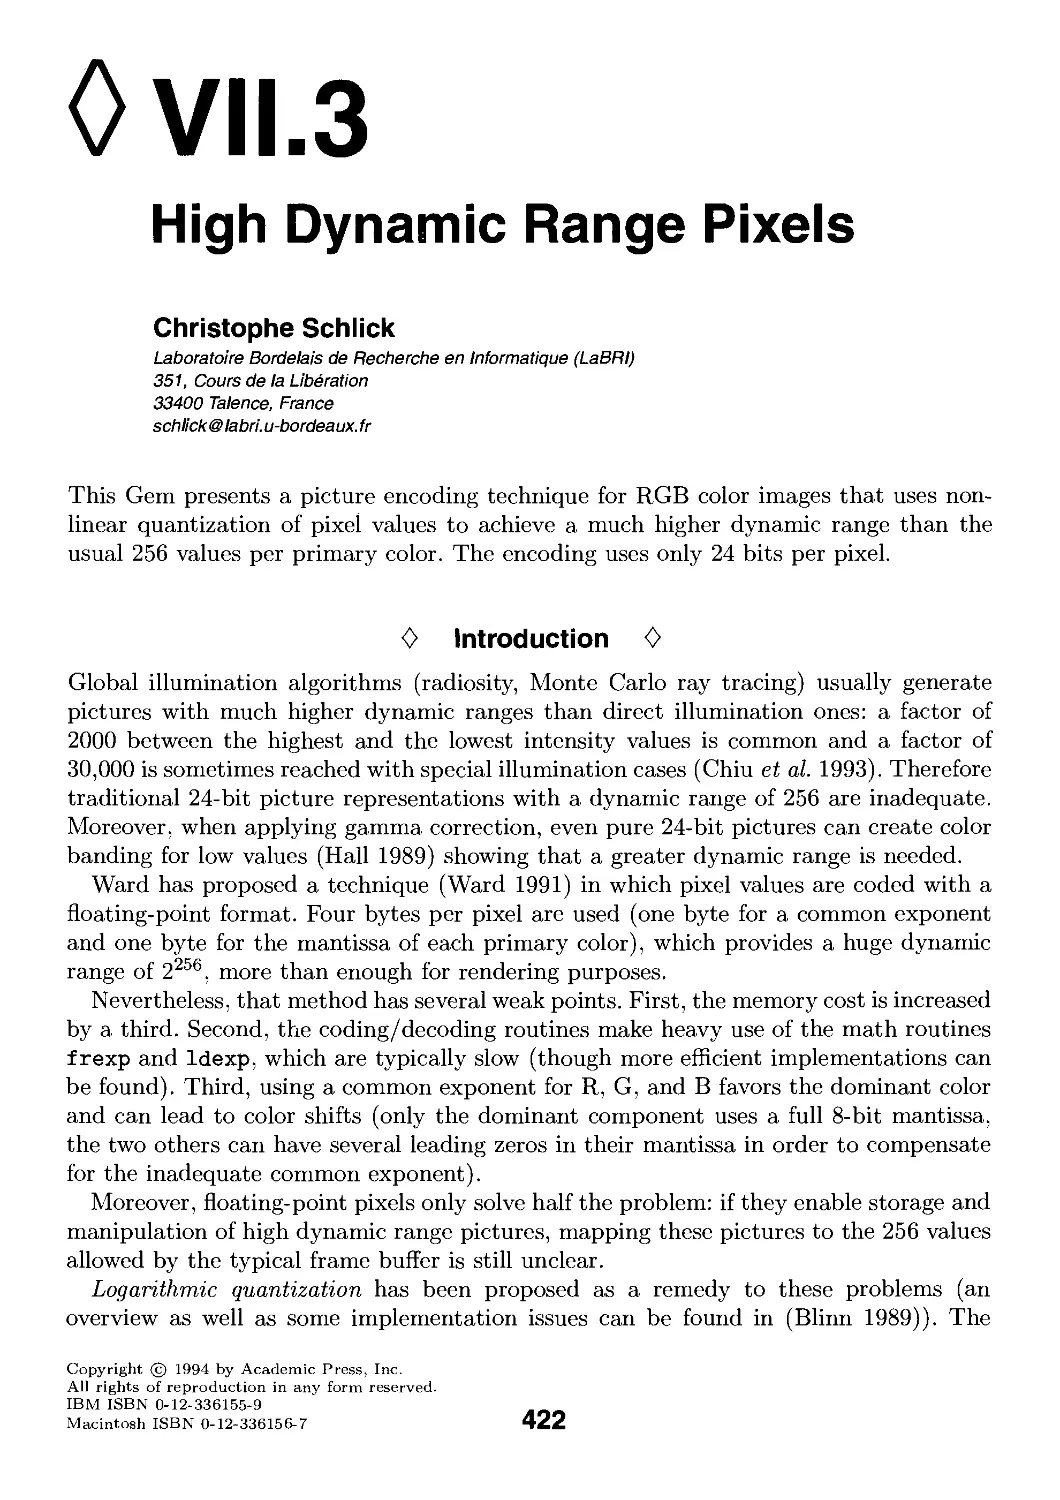 VII.3. Higli Dynamic Range Pixels by Christophe Schlick